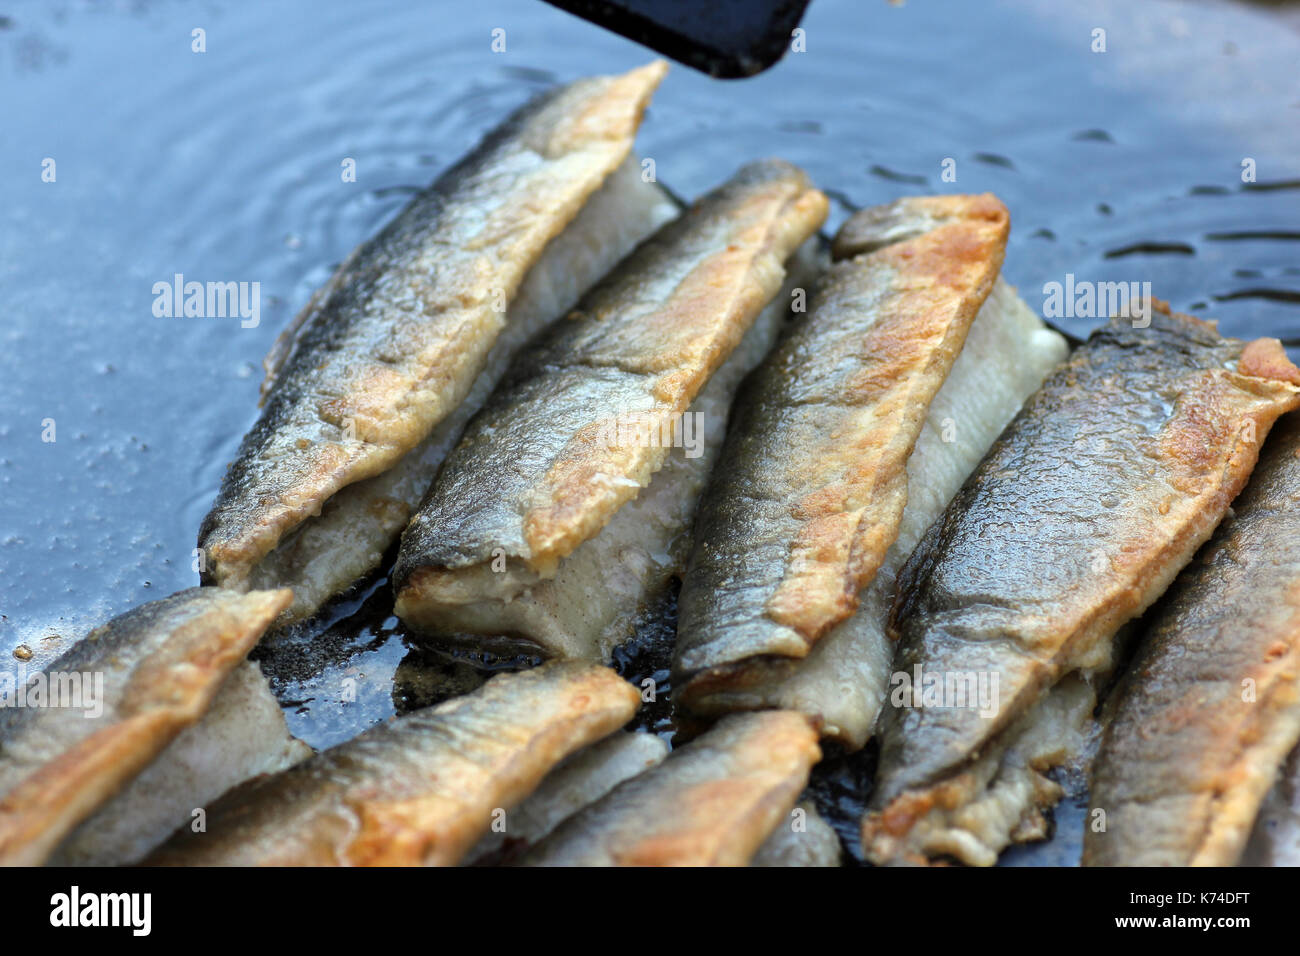 Bratheringe frisch zubereitet in öl schwimmend, Fried herring prepared fresh floating in oil Stock Photo